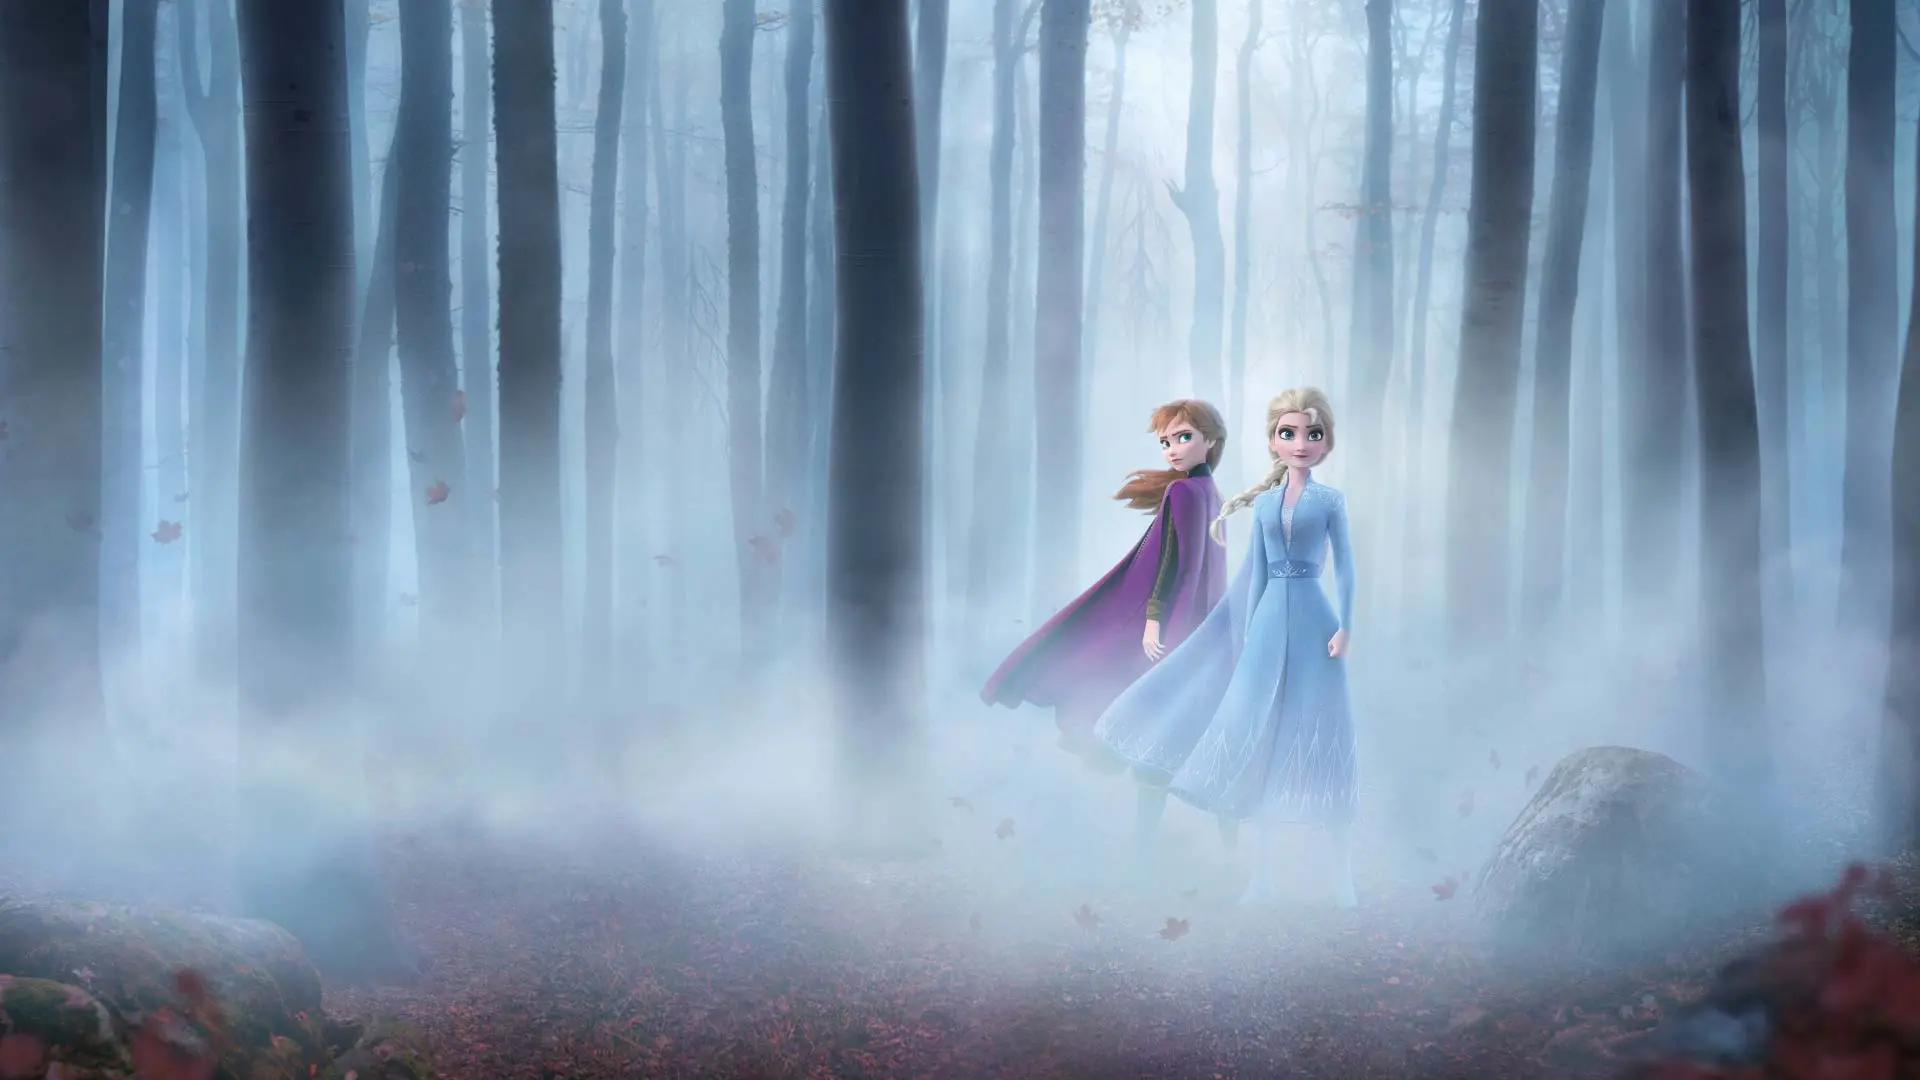 السا و آنا از فیلم یخ زده در وسط جنگل مه آلود